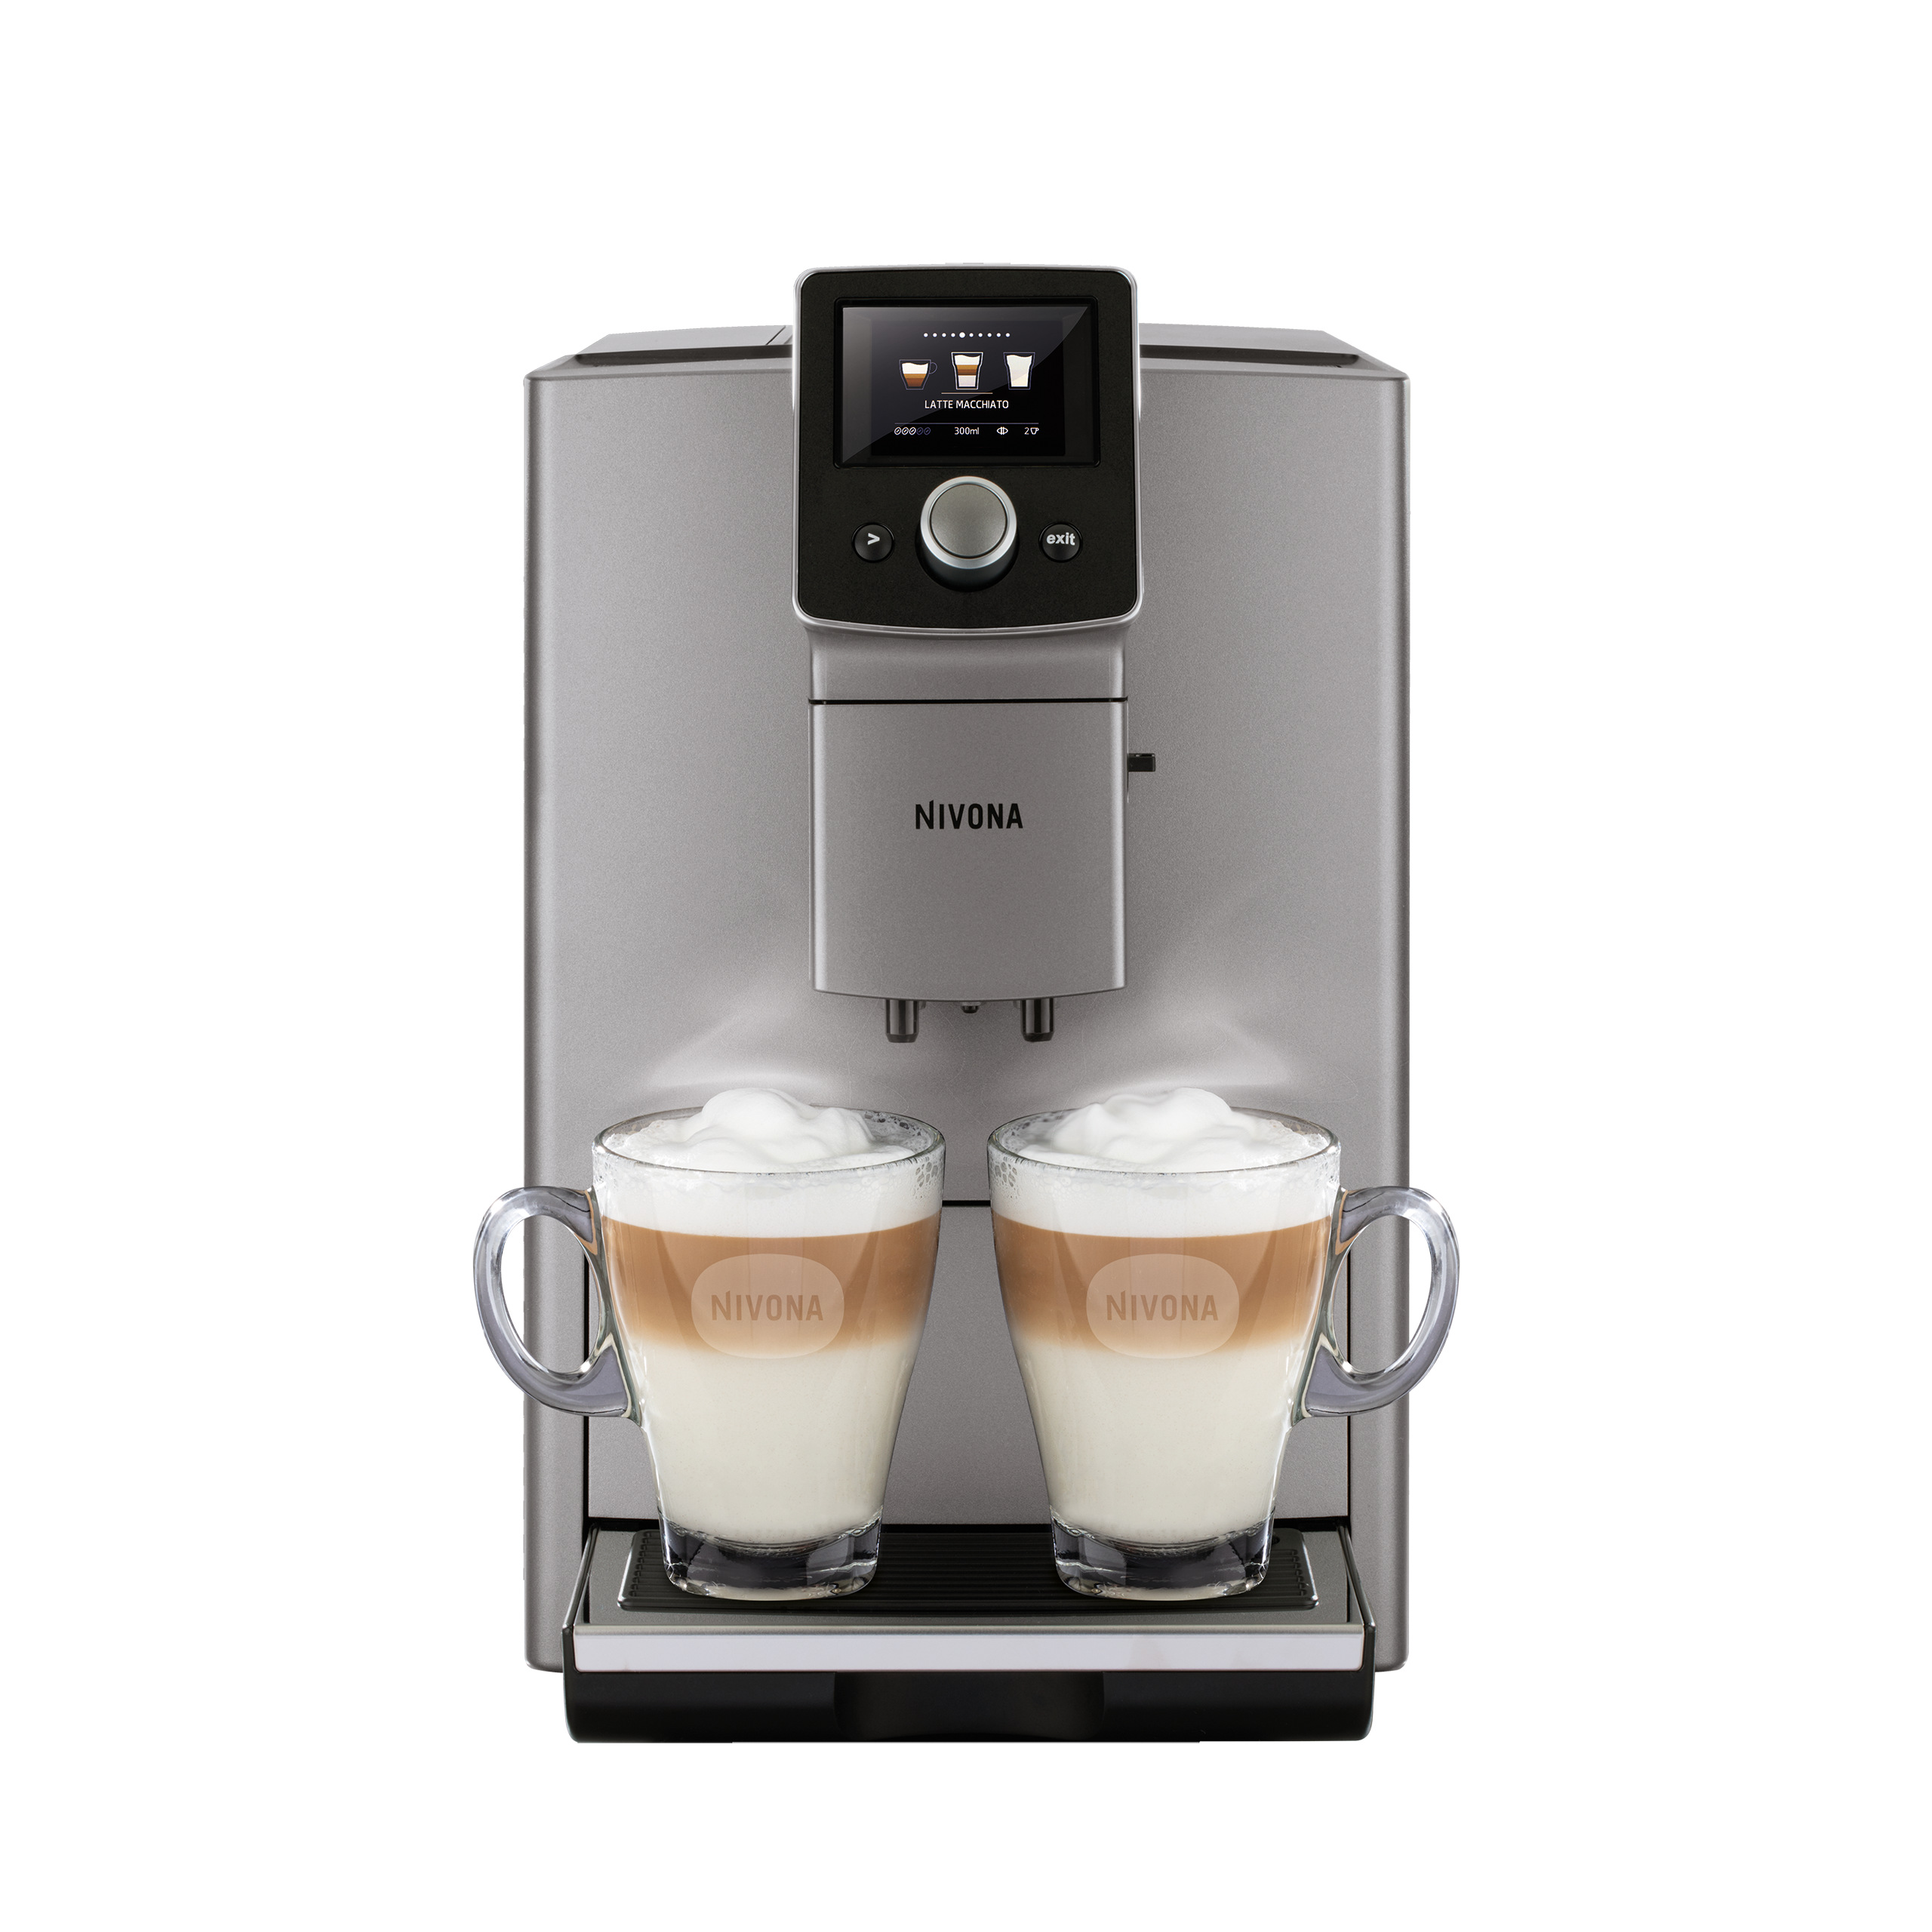 Vorführmaschine Nivona NICR 823 KaffeeVollautomat CafeRomatica , geprüft, mit 2 Jahren Garantie